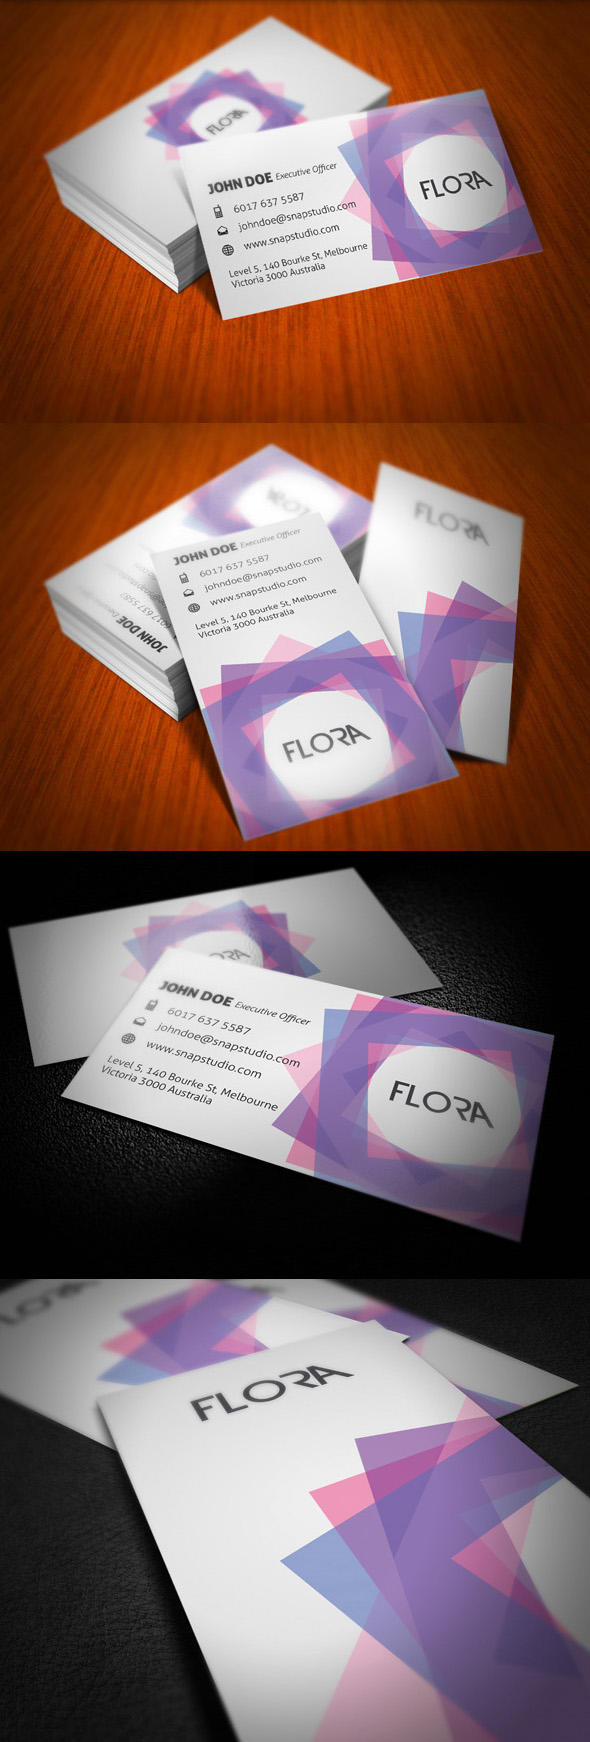 Flora Business Card